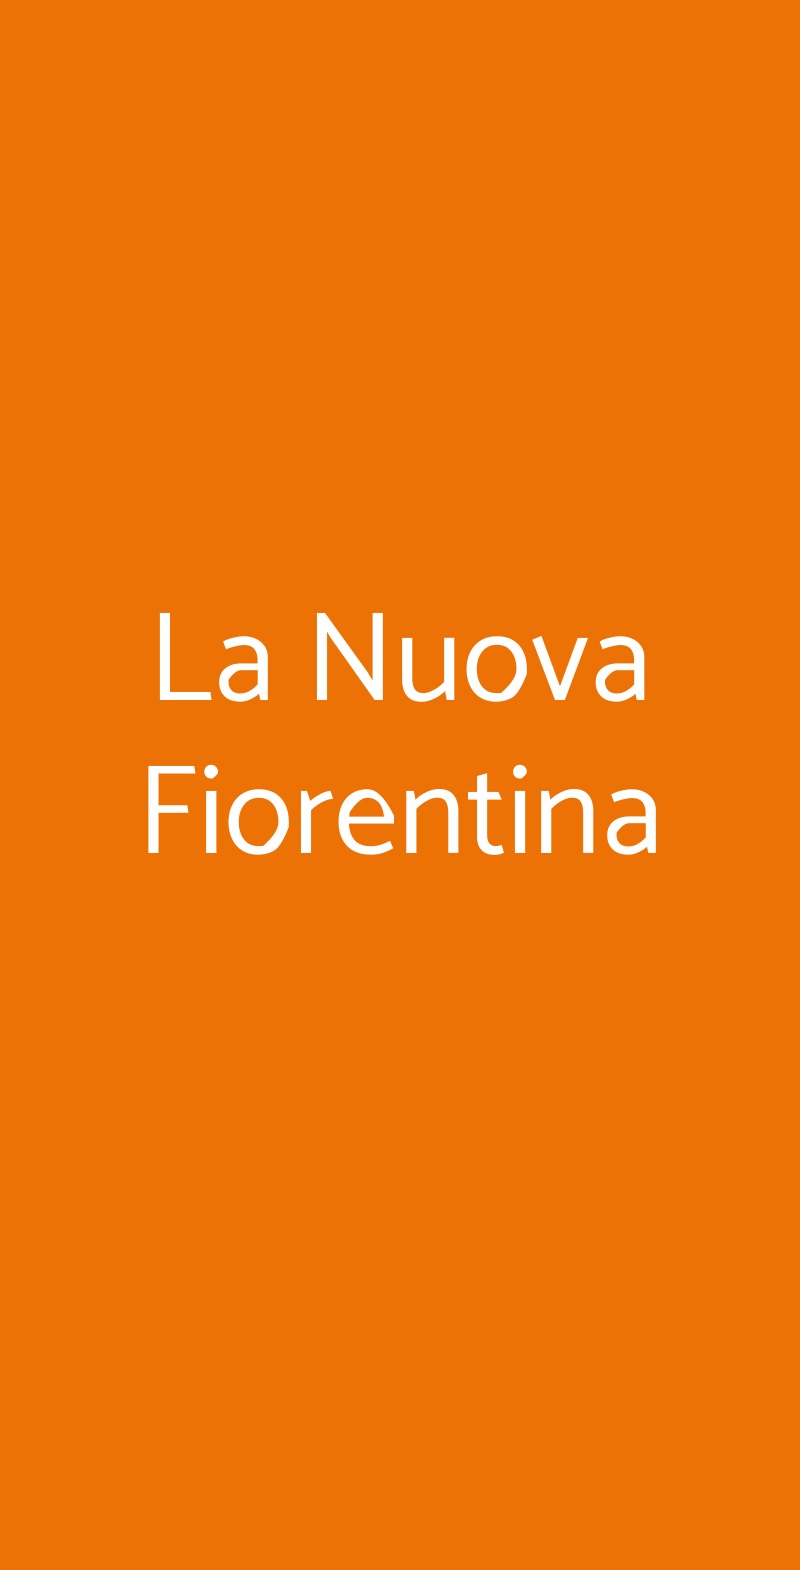 La Nuova Fiorentina Roma menù 1 pagina